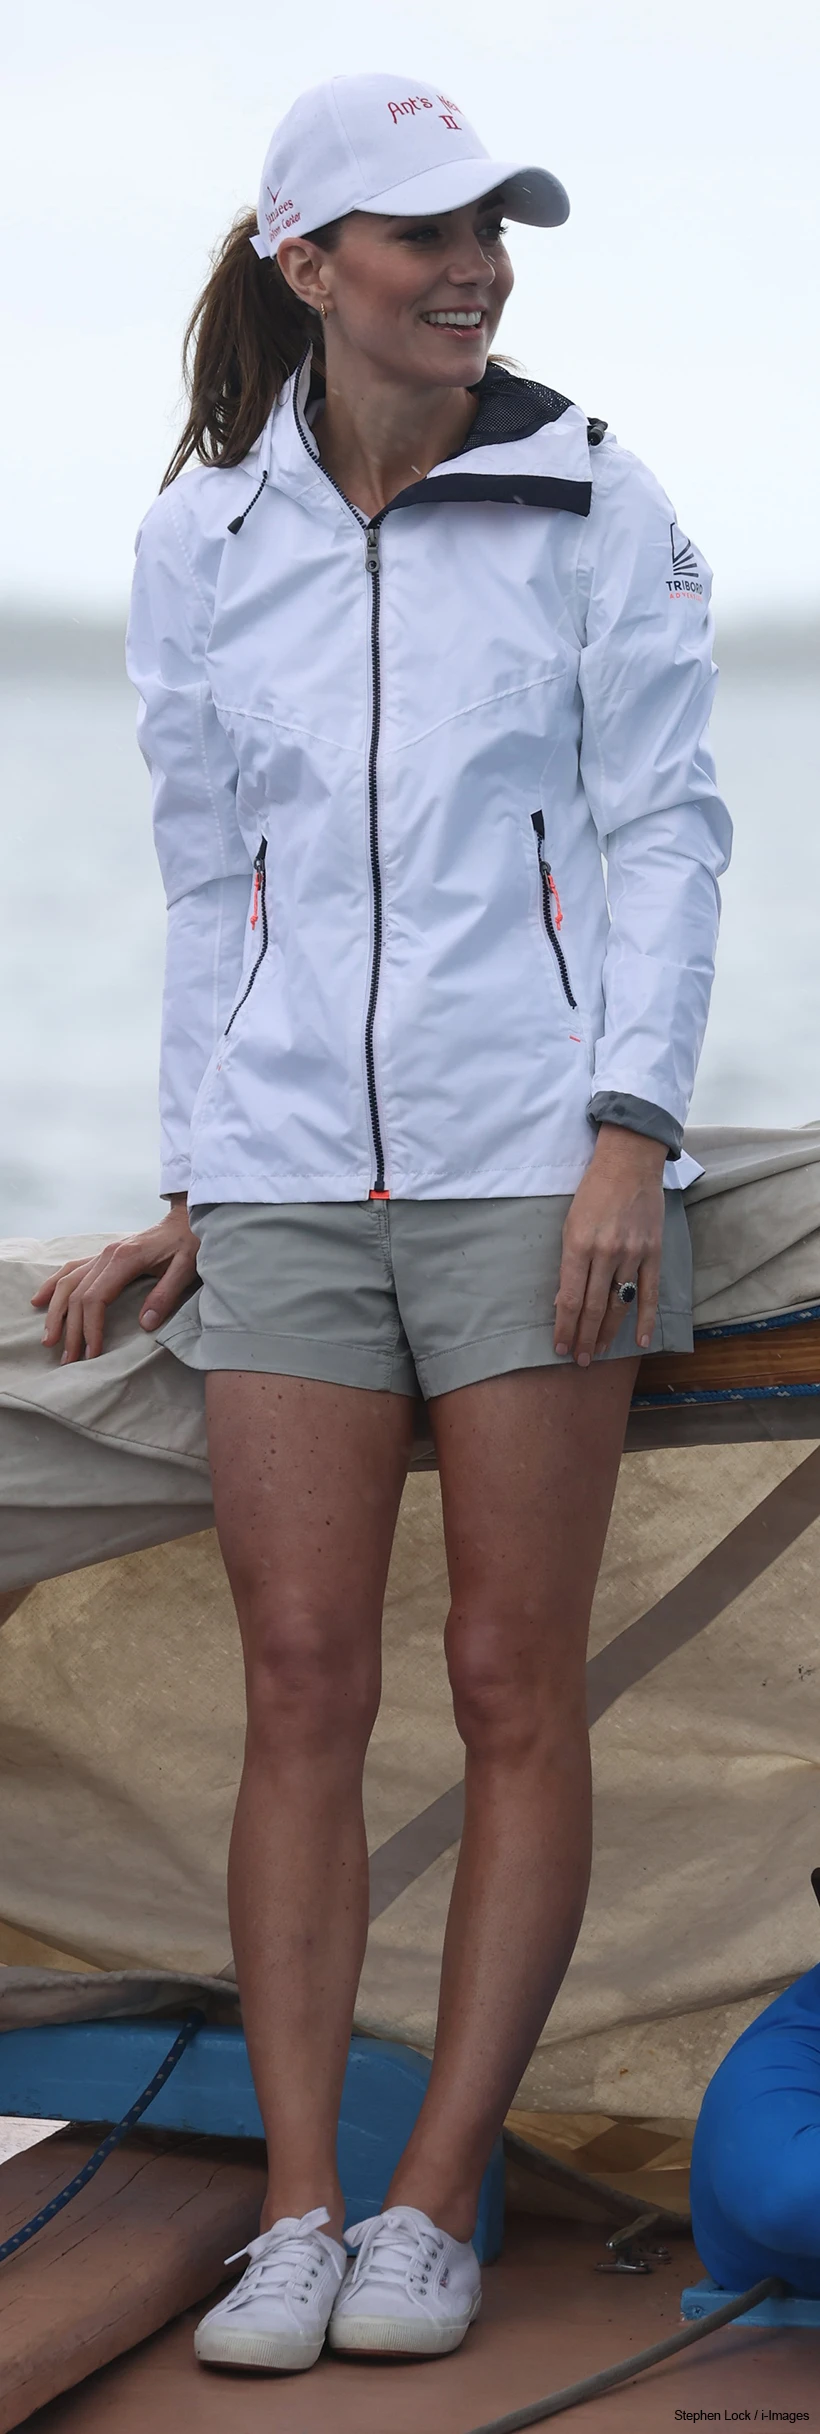 Kate Middleton wears shorts & jacket for Race Bahamas